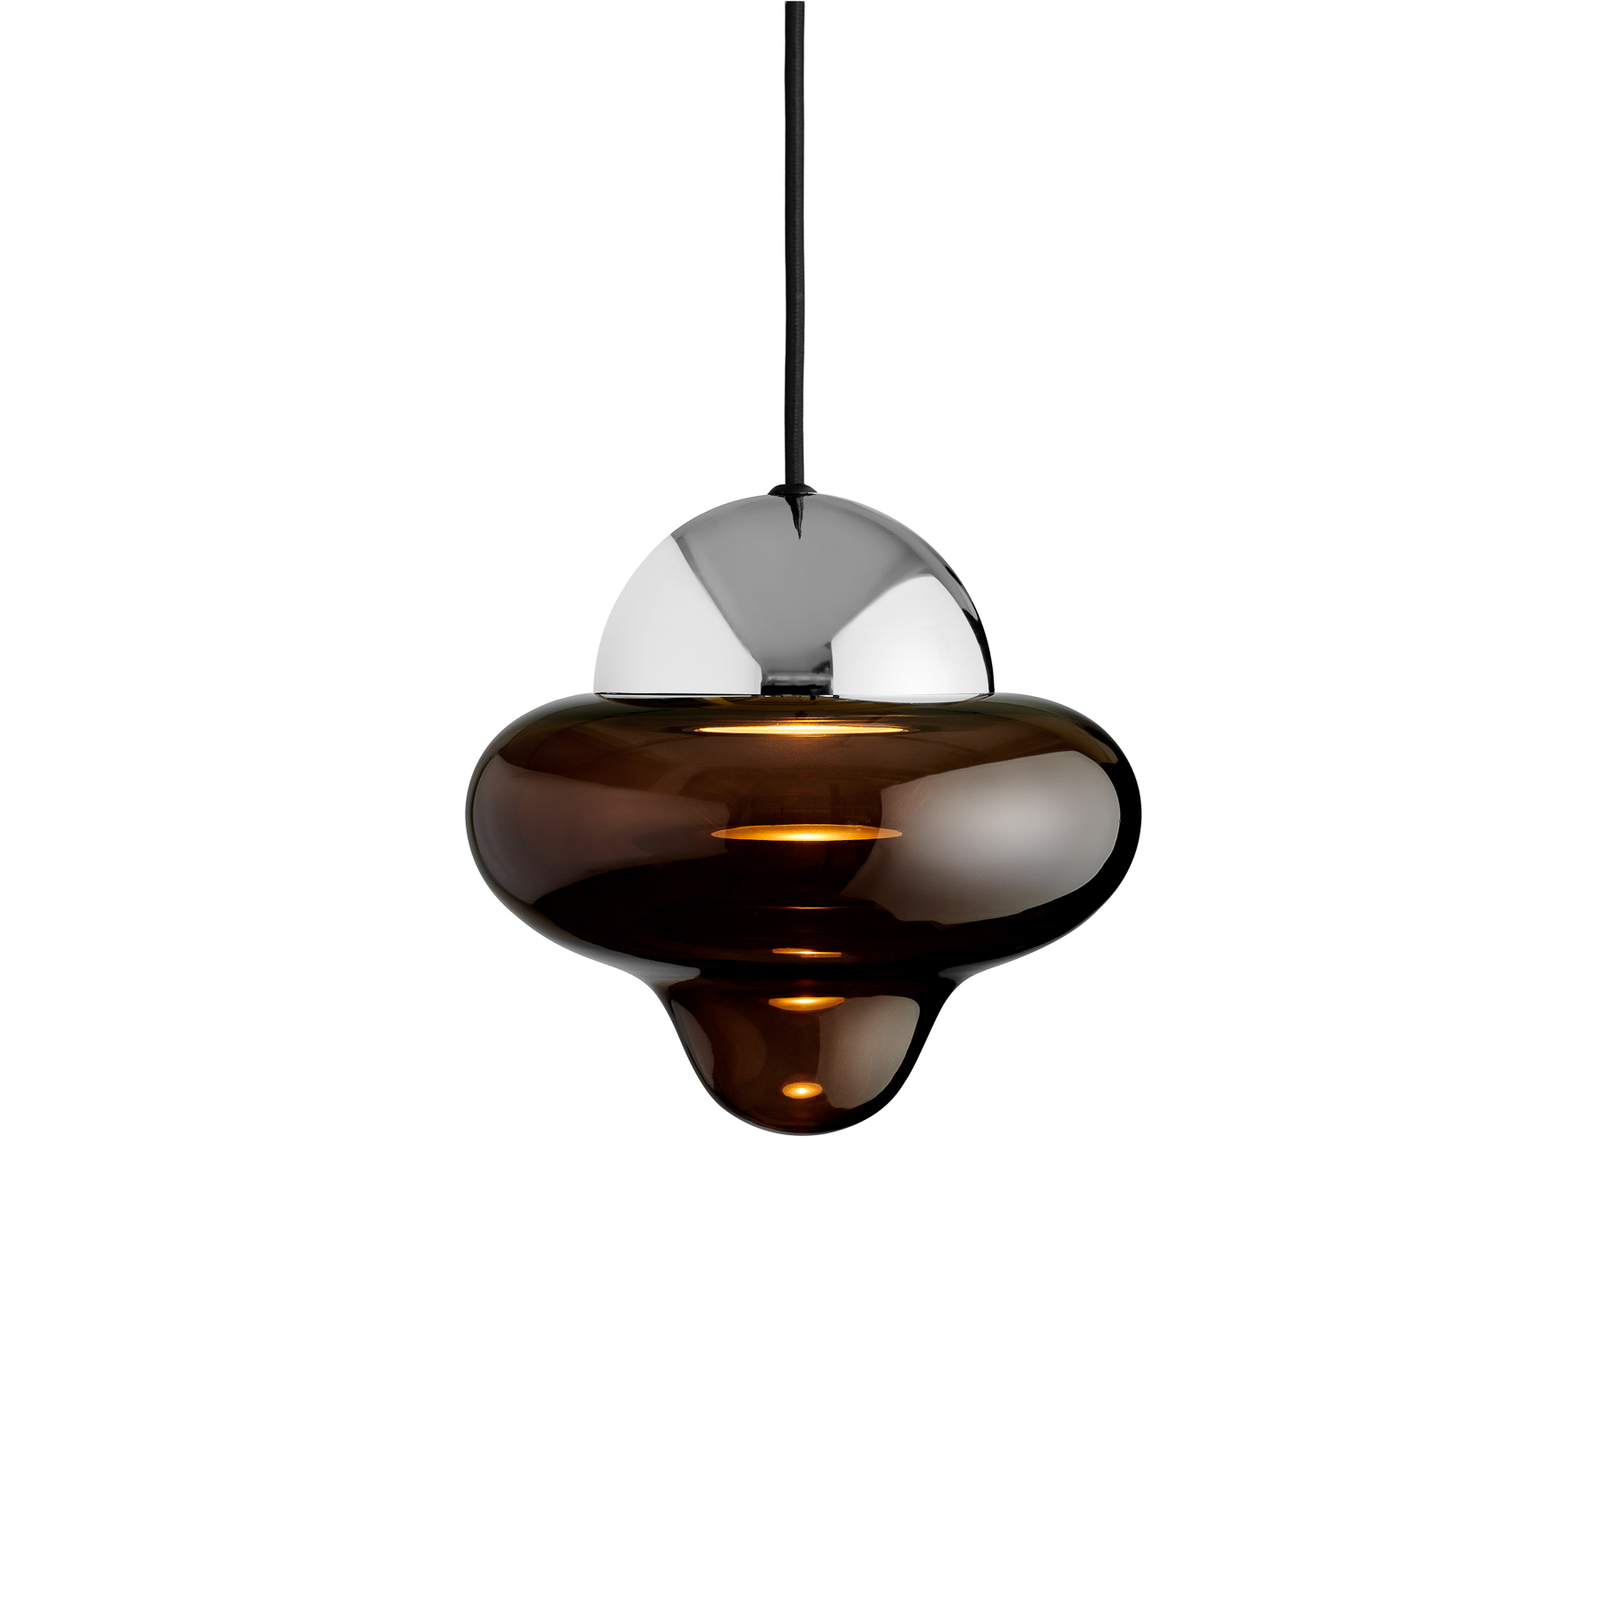 LED-Hängeleuchte Nutty, braun / chromfarben, Ø 18,5 cm, Glas